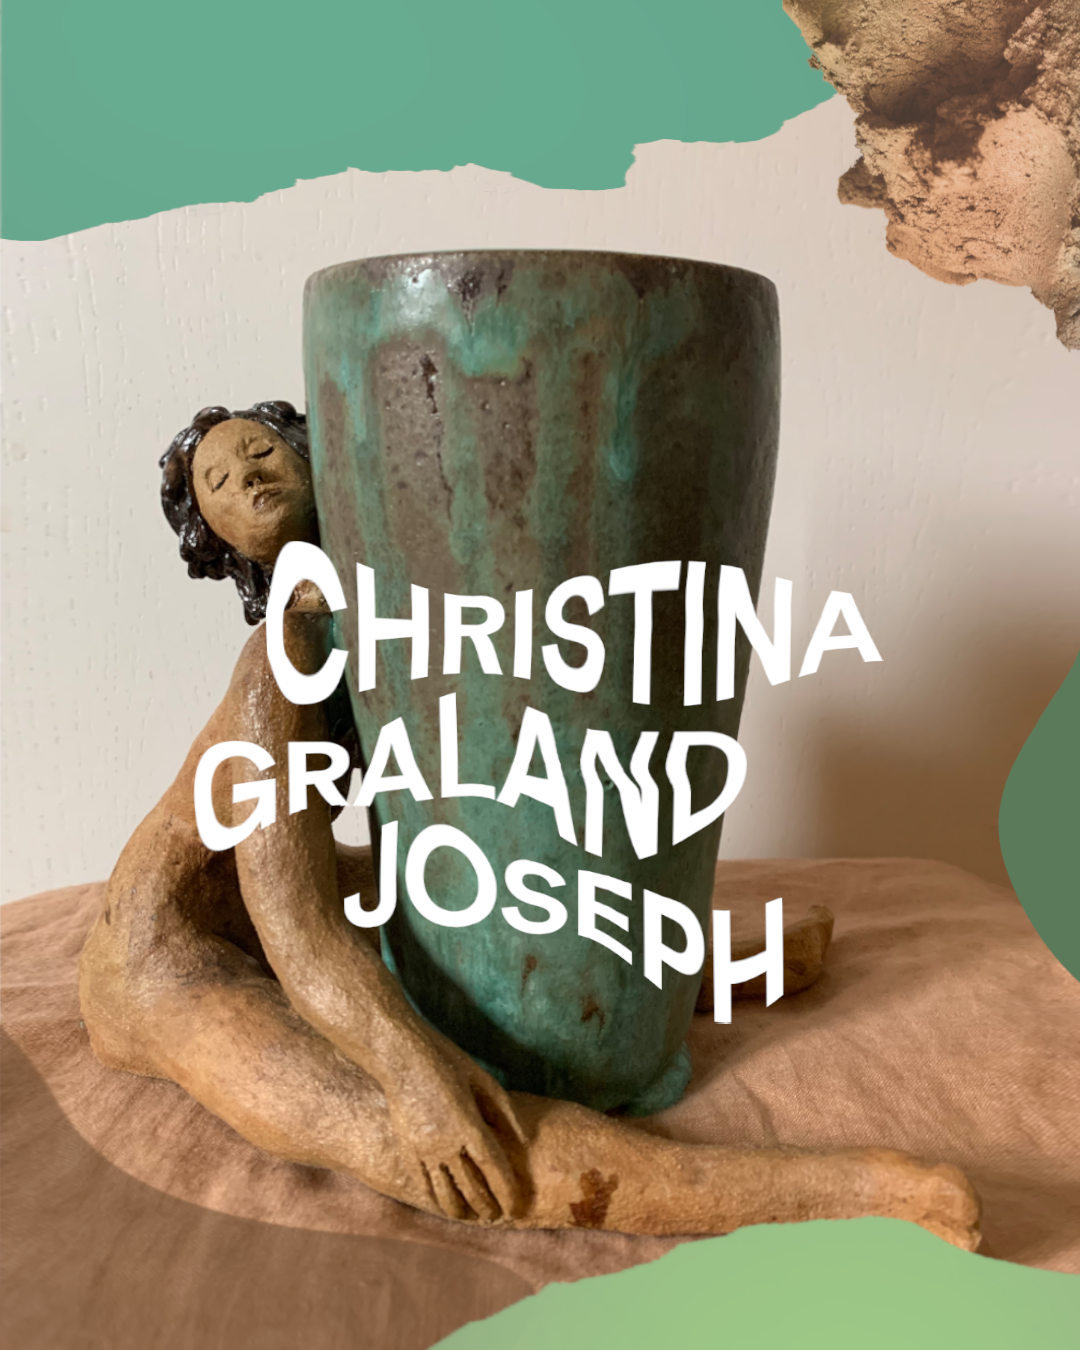 CHRISTINA GRALAND JOSEPH